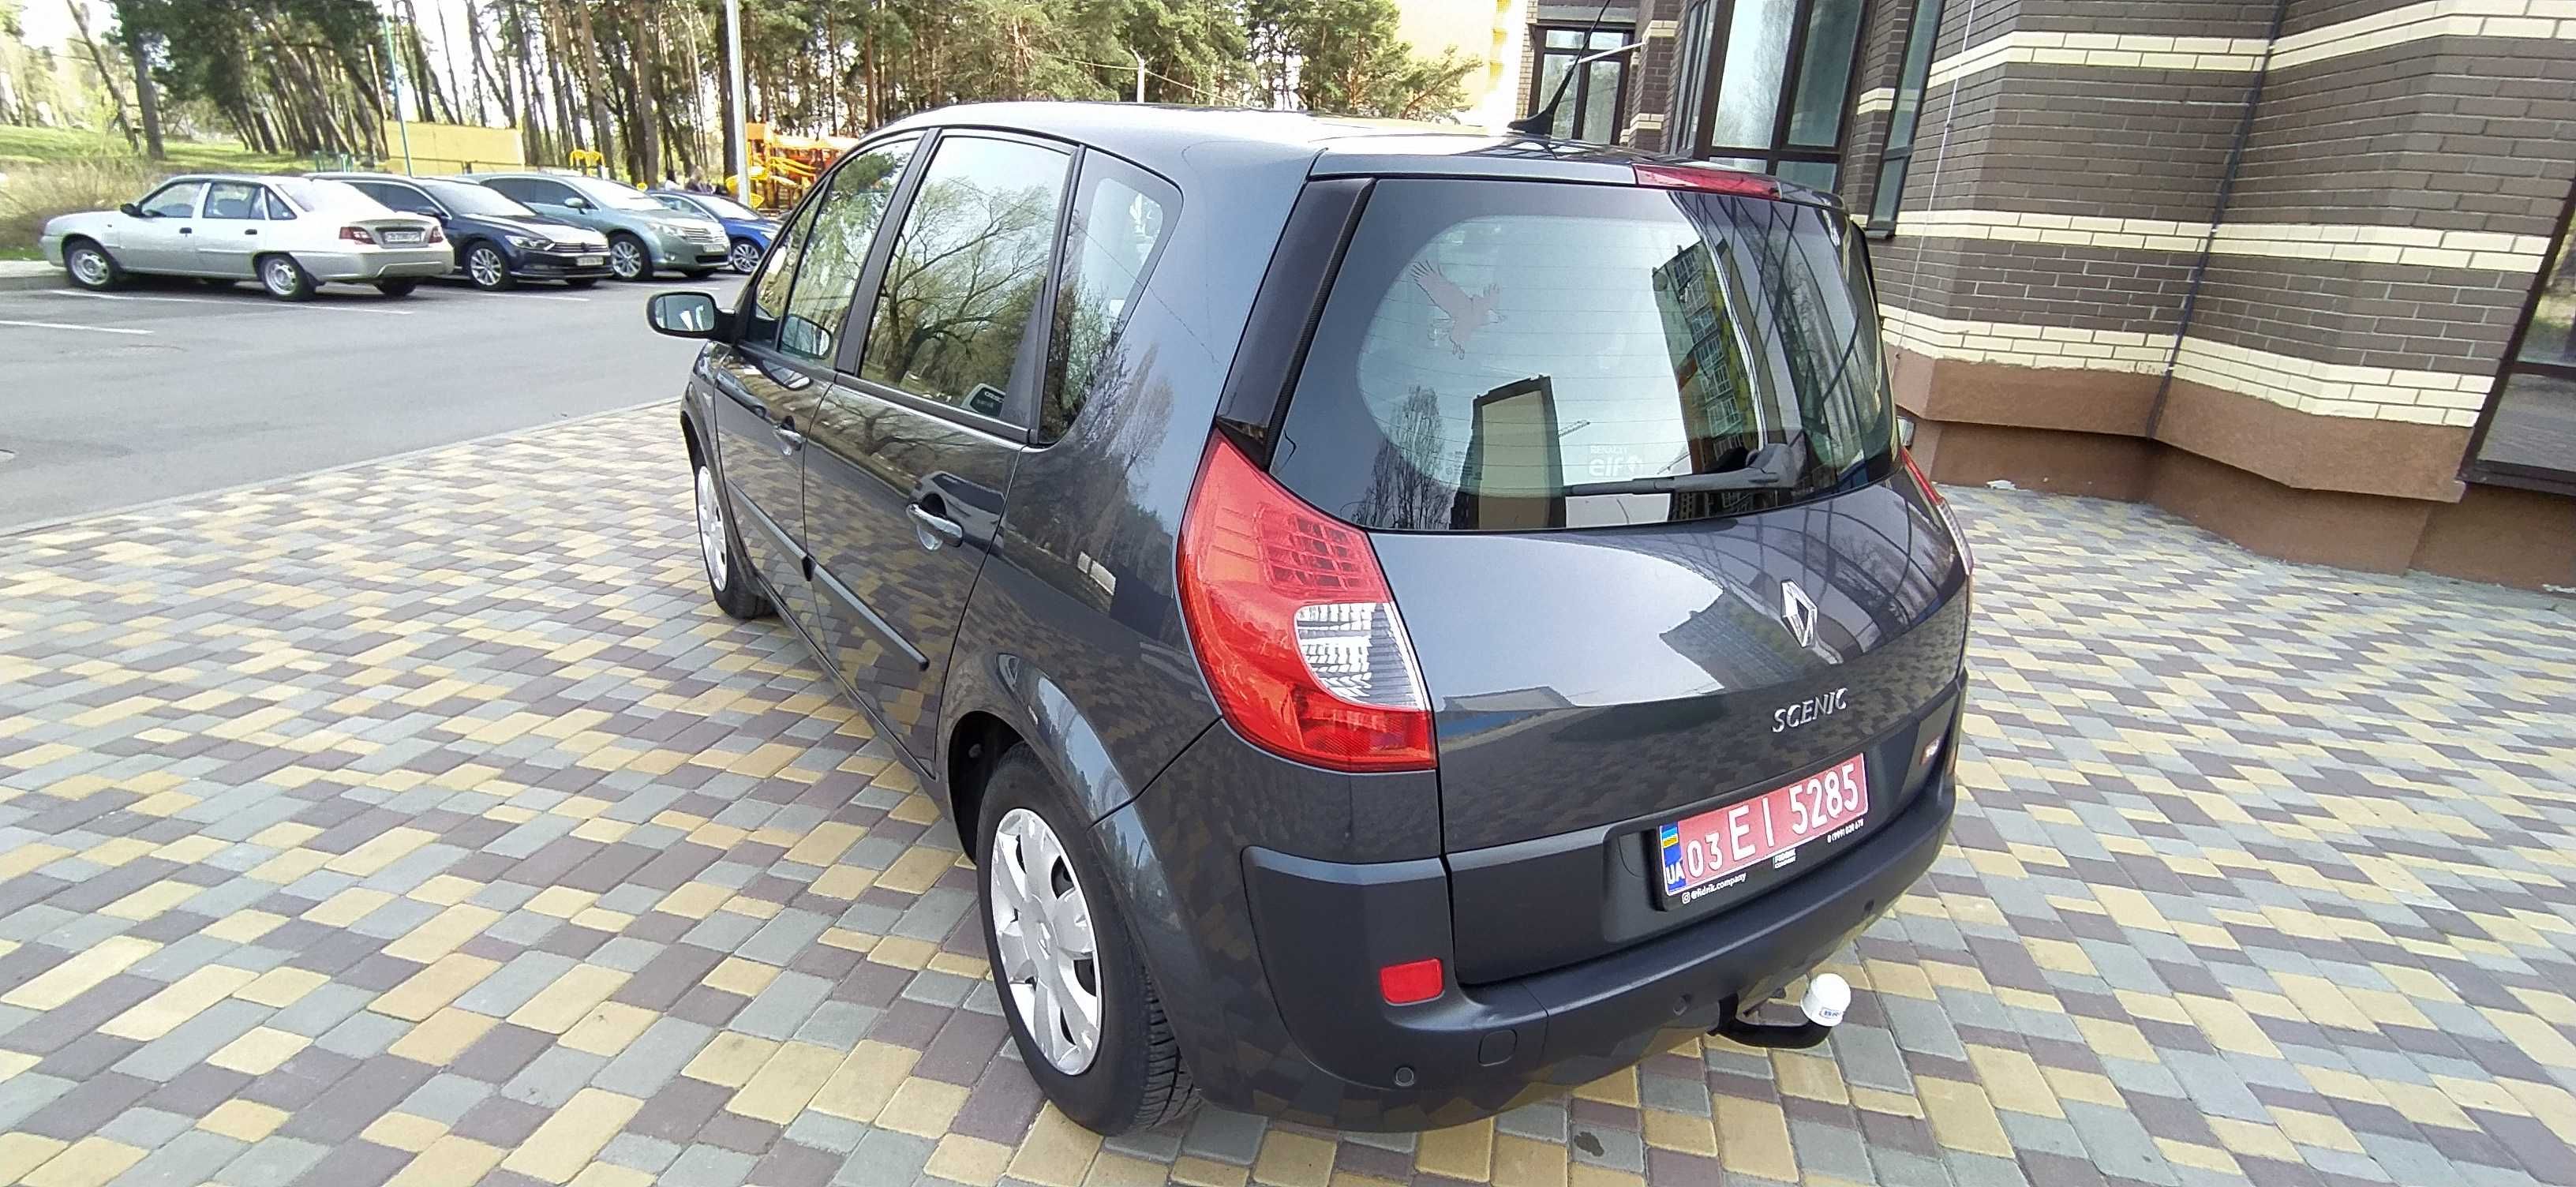 Продам свежепригнанный Renault Scenic 1,6 из Германии